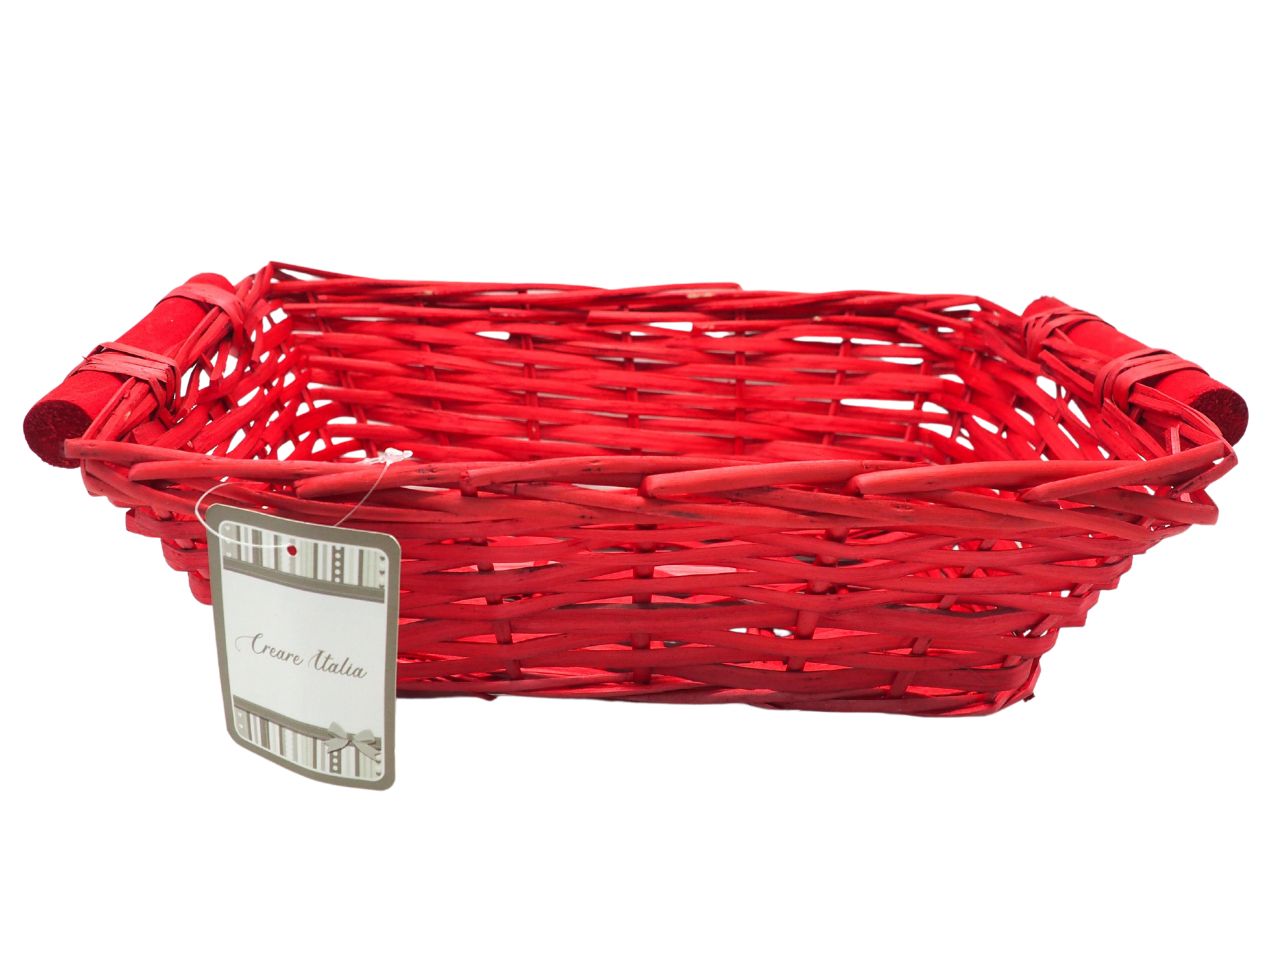 Cesto rettangolare in legno colore rosso con maniglie misura 32x25cmxh.10,5cm